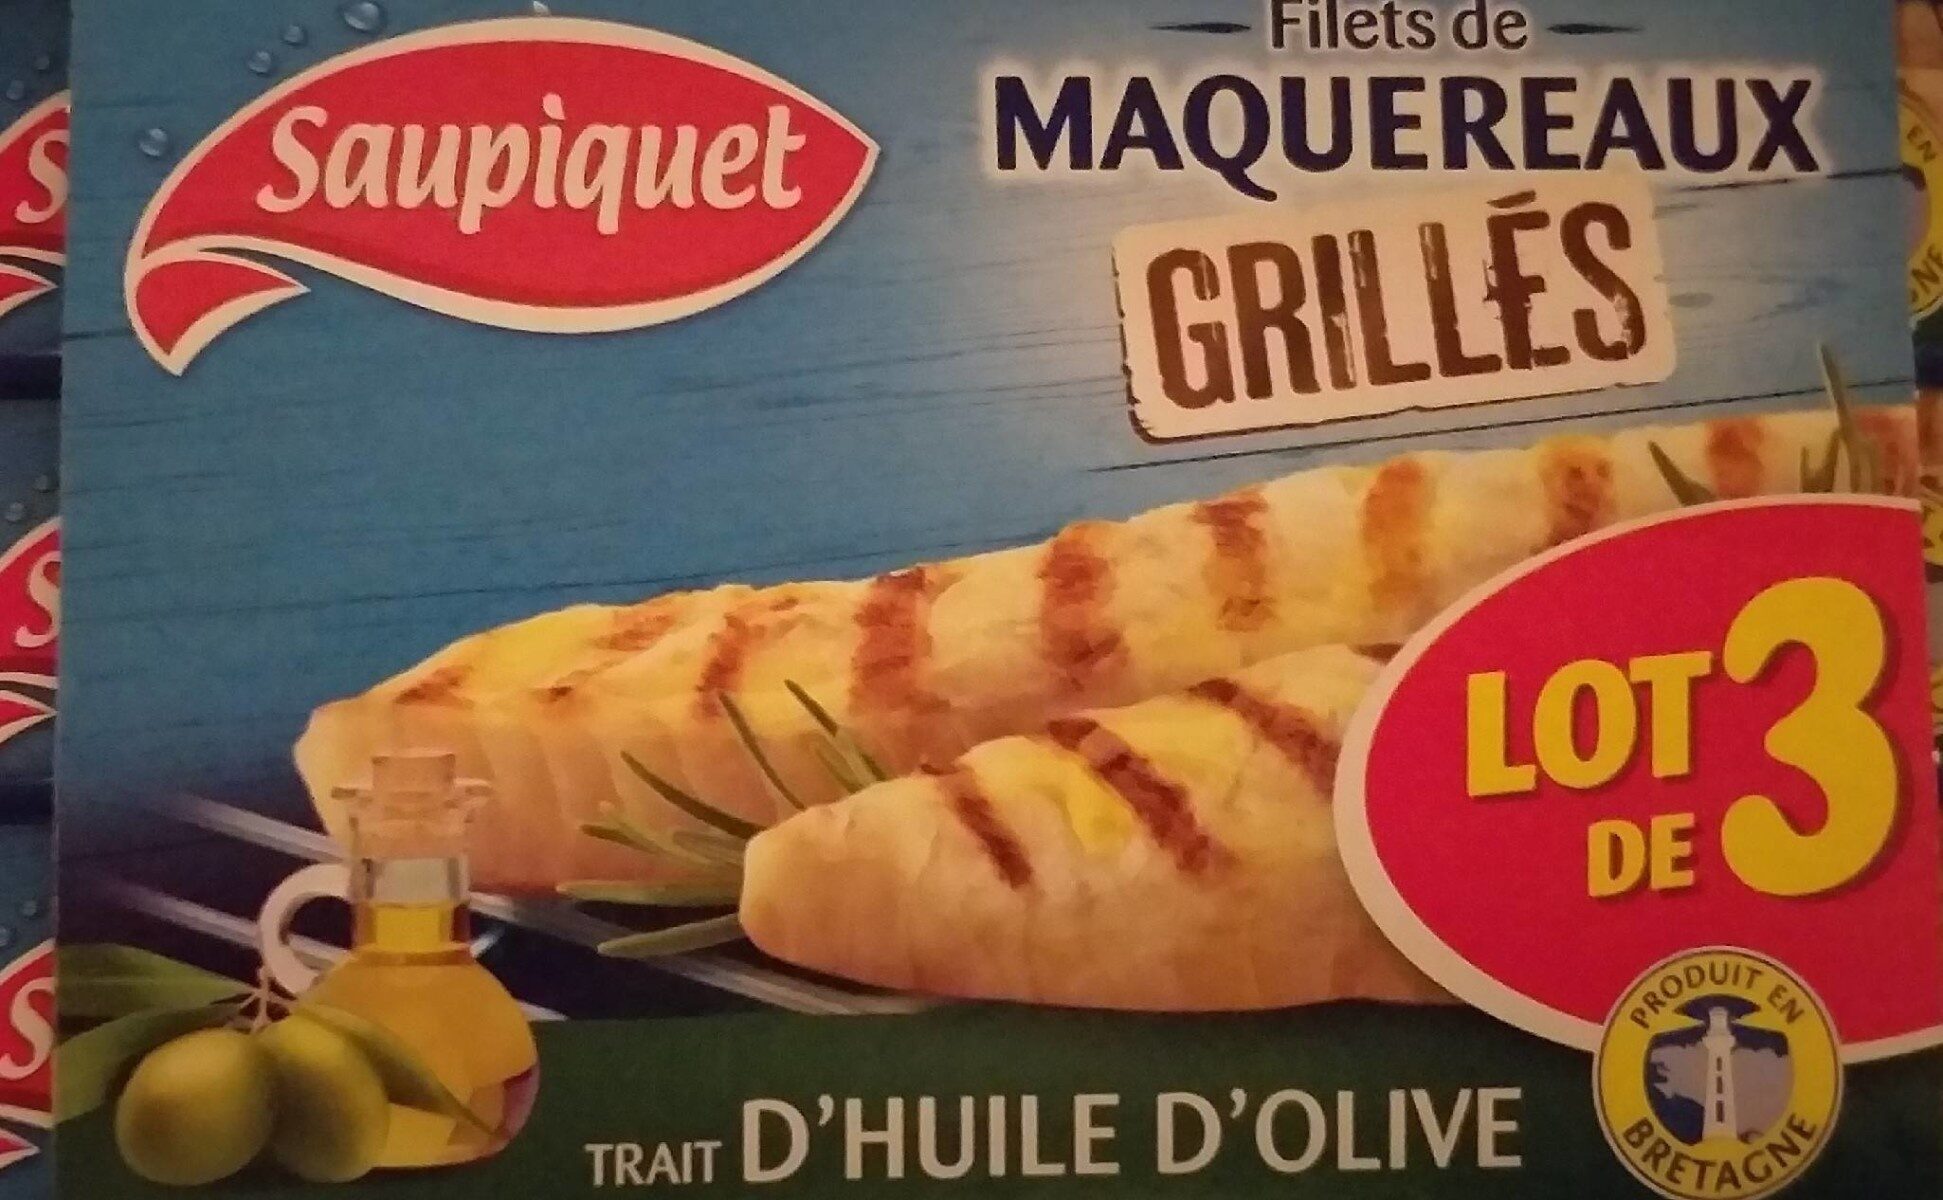 Filets de maquereaux grillés - Product - fr